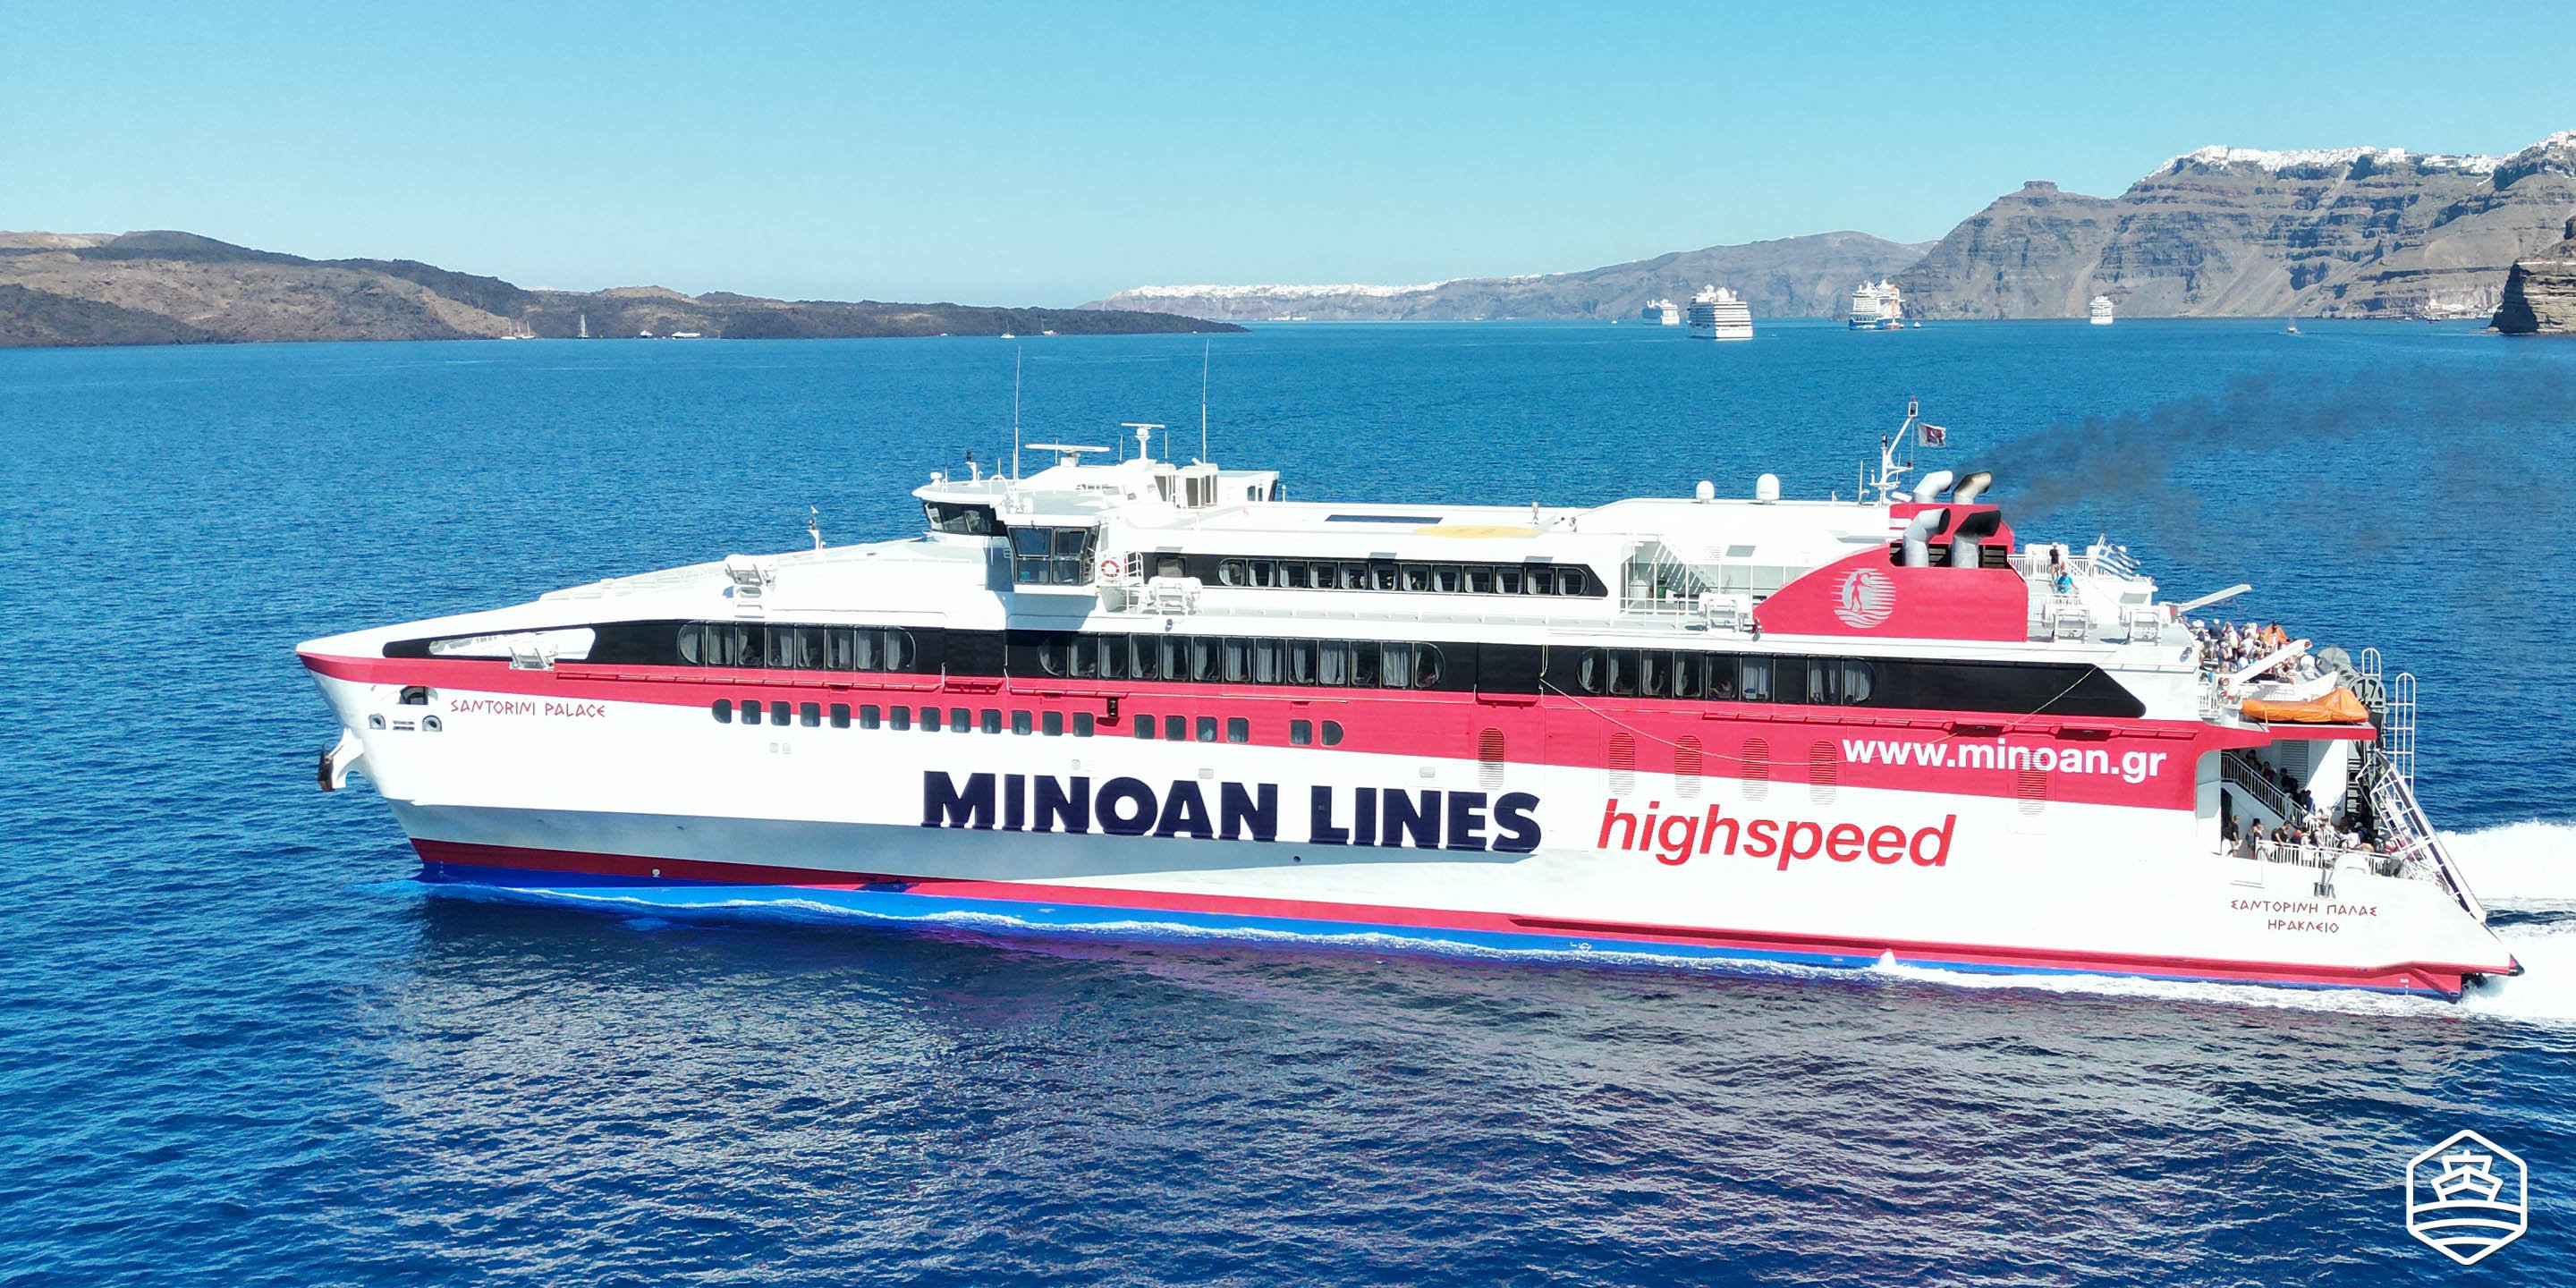 Το ταχύπλοο πλοίο Santorini Palace της Minoan Lines αναχωρεί από το λιμάνι του Αθηνιού στη Σαντορίνη για το Ηράκλειο της Κρήτης